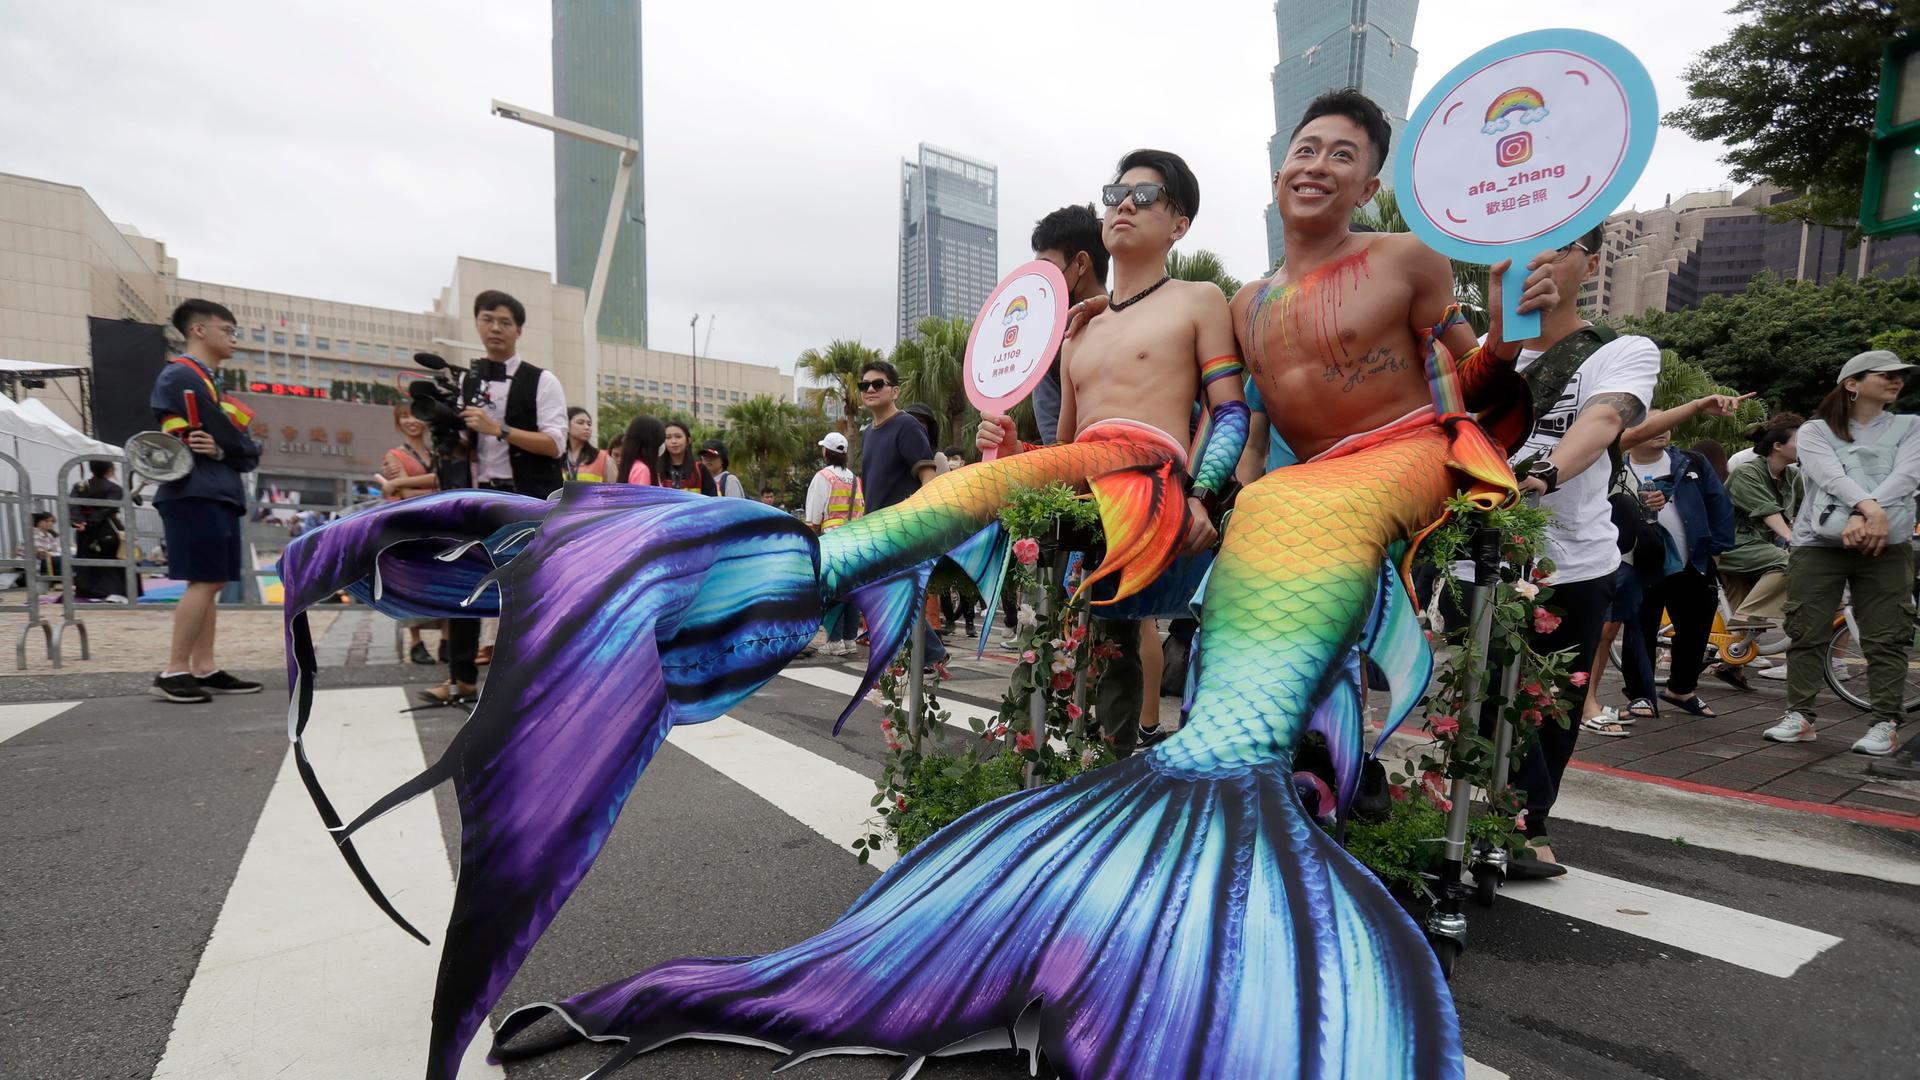 Menschen in Kostümen nehmen an der jährlichen Taiwan LGBTQ+ Pride-Parade teil. Im Bild sind zwei Männer mit nacktem Oberkörper zu sehen, die Meerjungfrauen-Schwänze in Regenbogenfarben tragen.